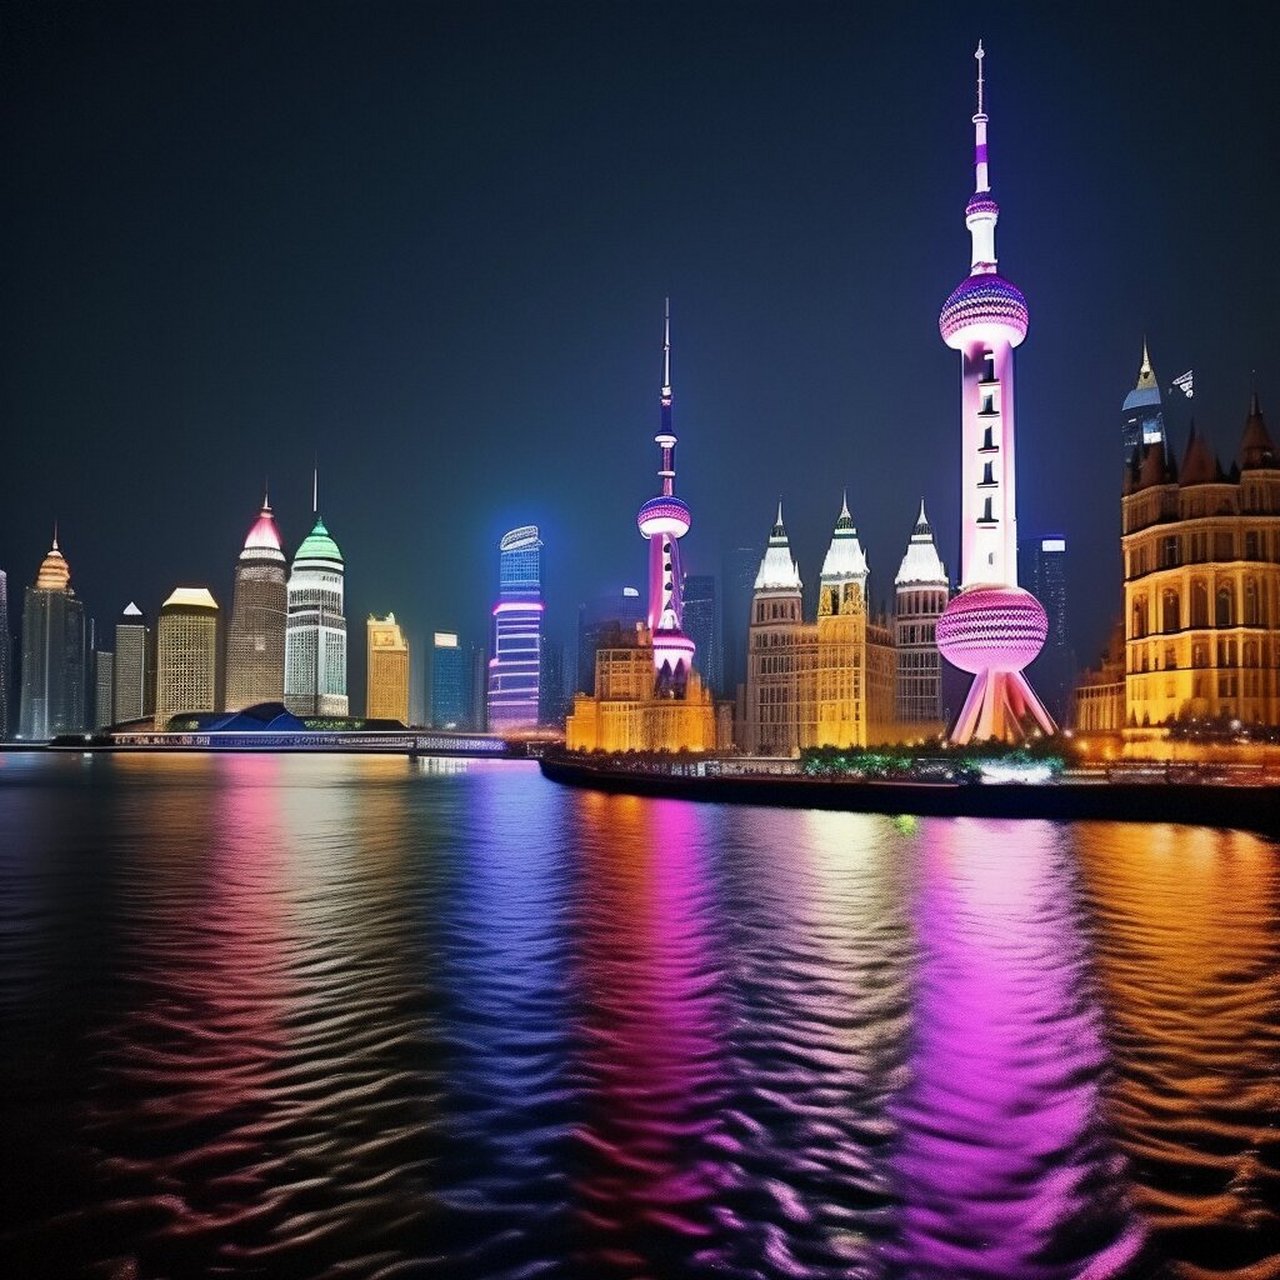 上海十大夜景夏季图片